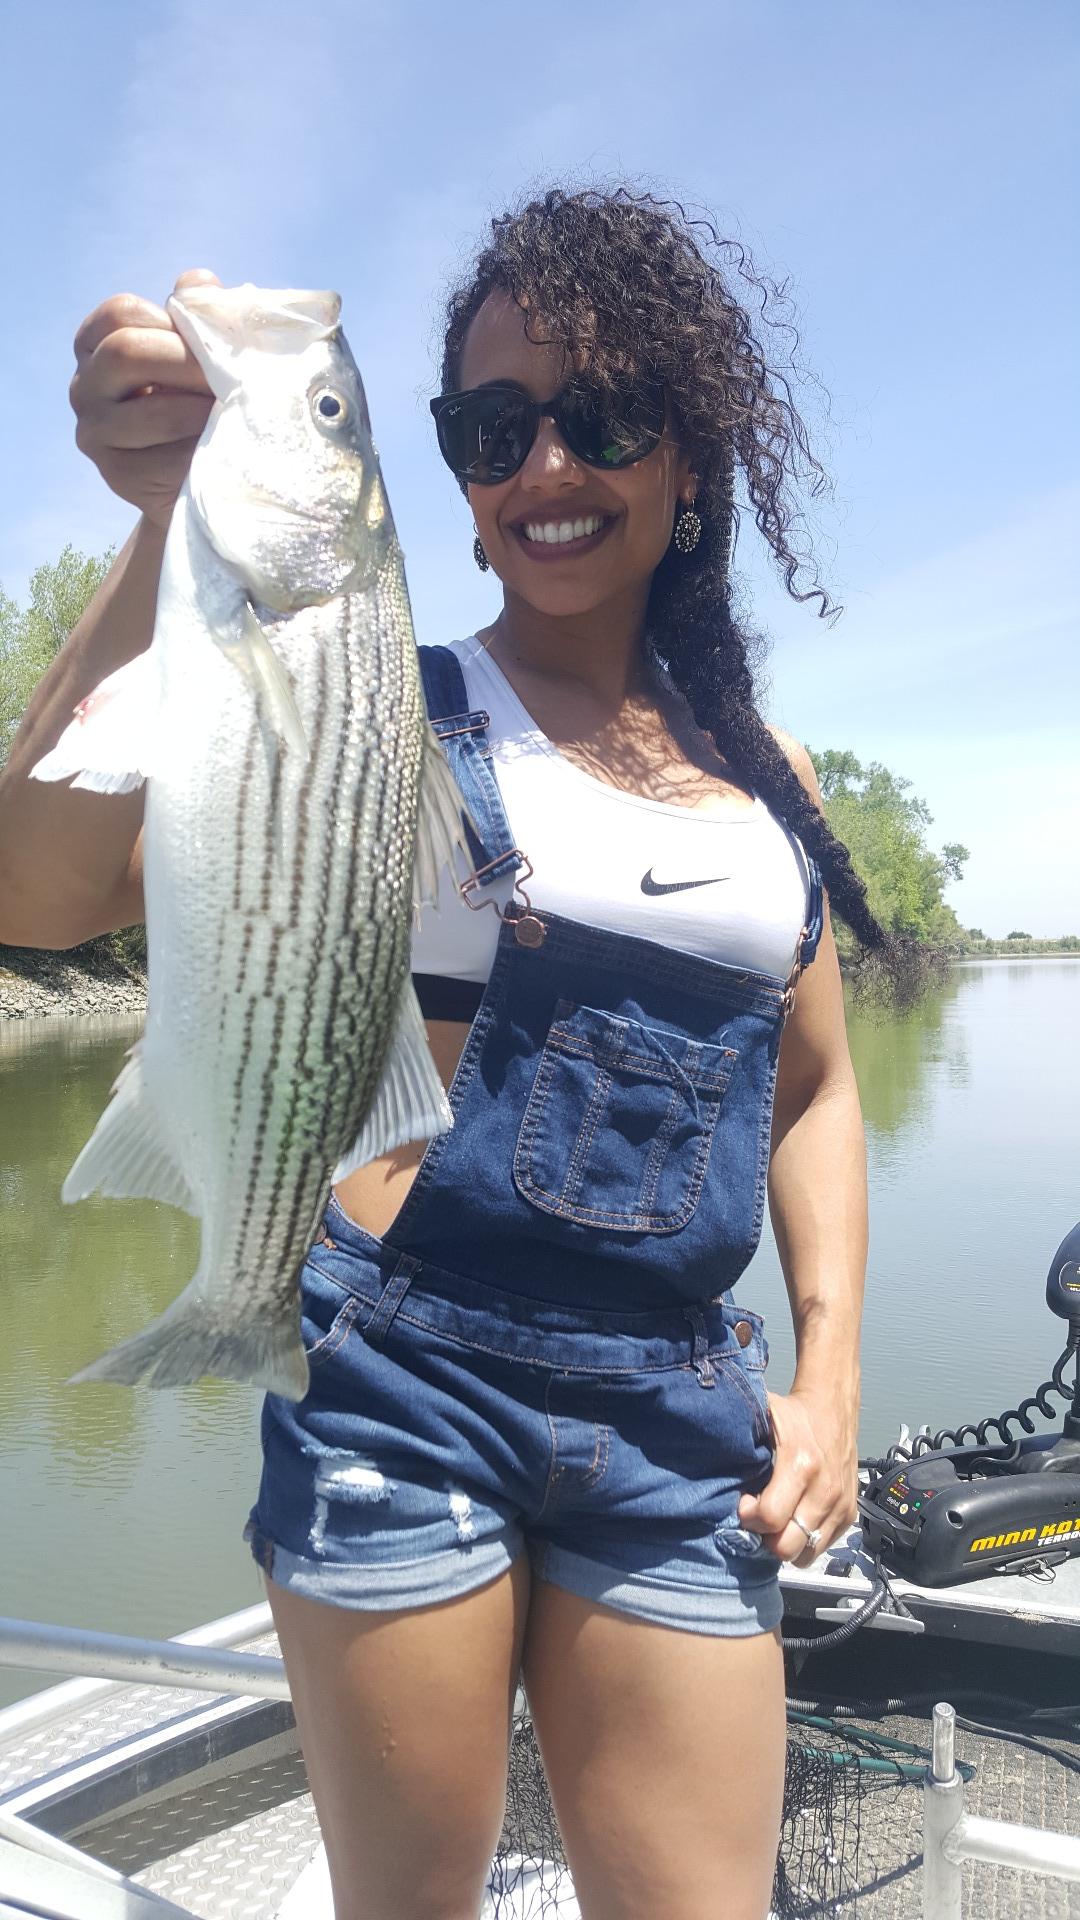 Still catching bass!